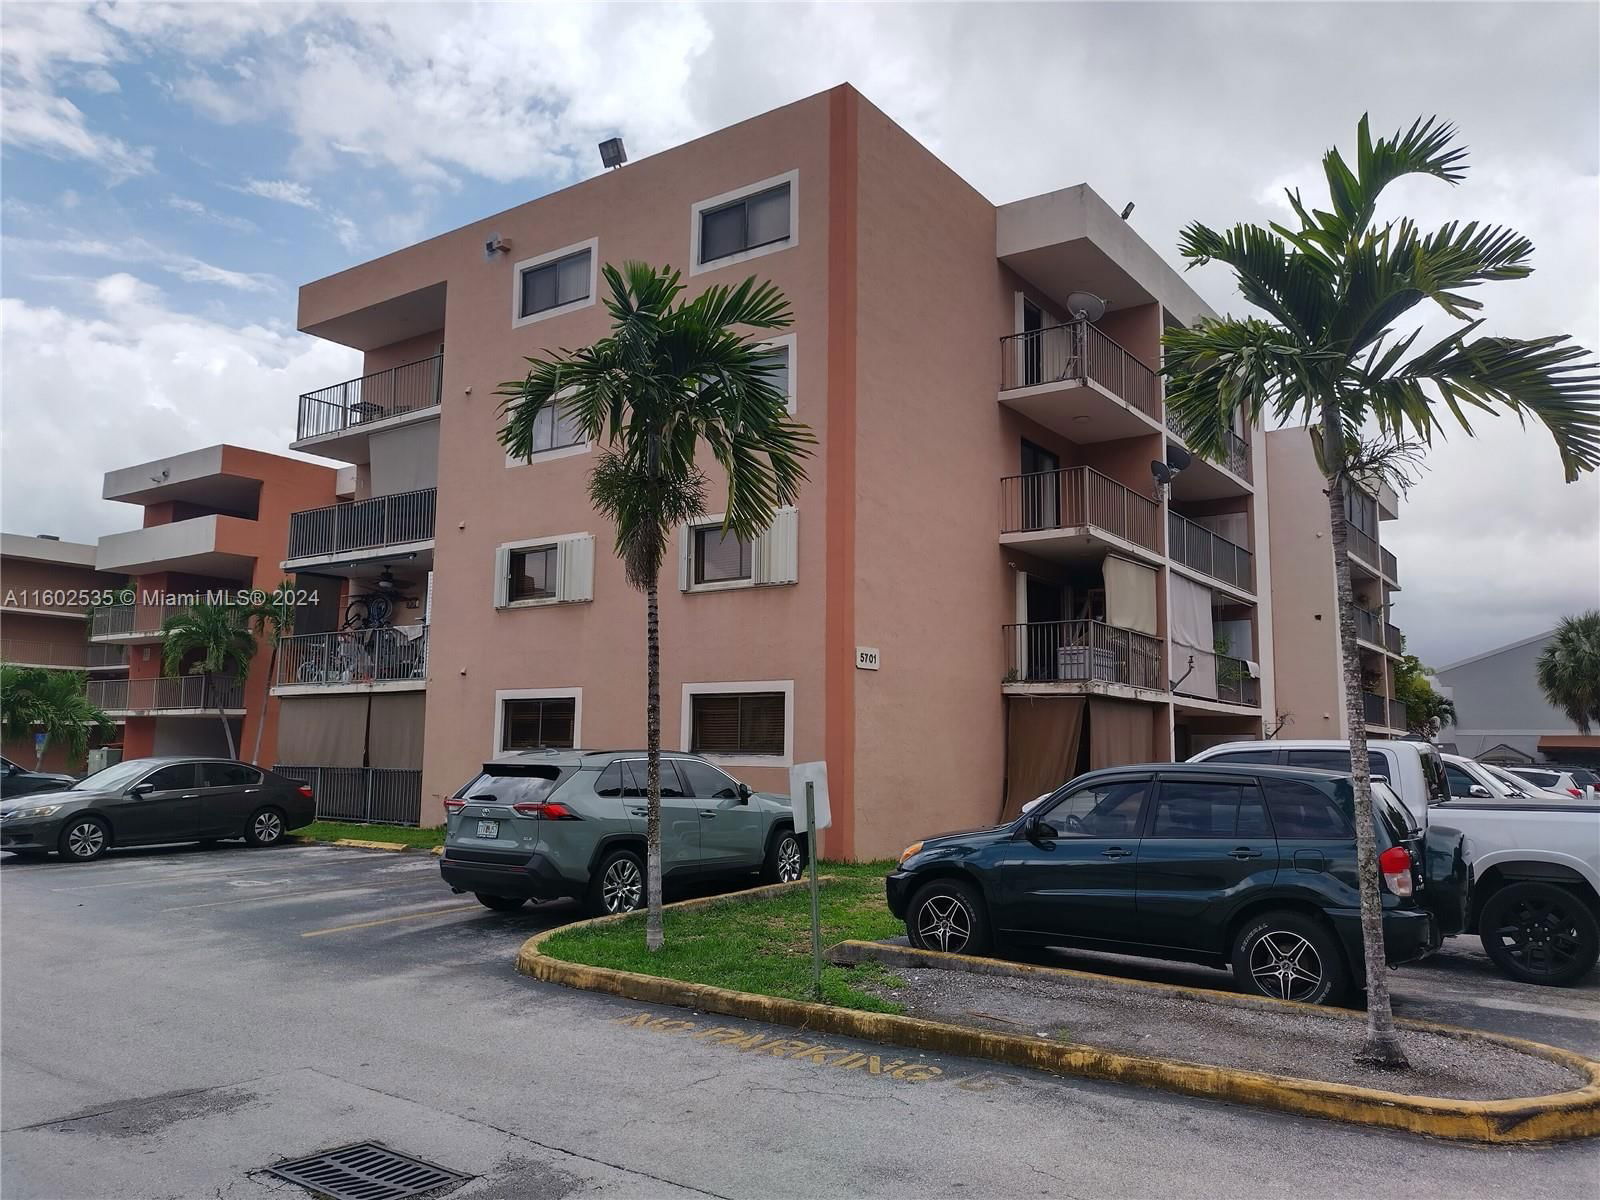 Real estate property located at 5701 25th Ct #201, Miami-Dade County, EL PUEBLO DE VERA CONDO, Hialeah, FL